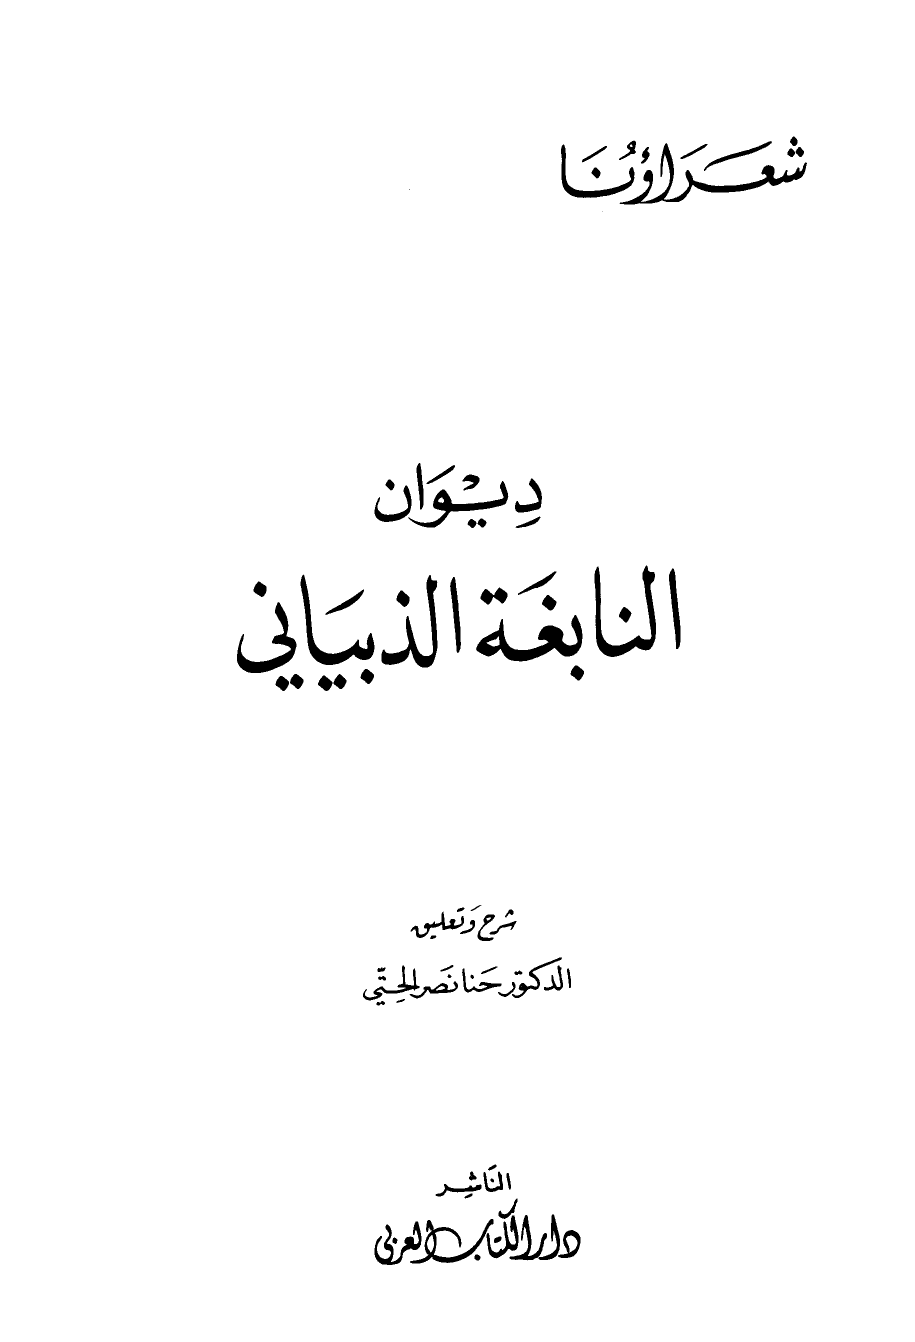 تنزيل وتحميل كتاِب ديوان النابغة الذبياني ط الكتاب العربي pdf برابط مباشر مجاناً